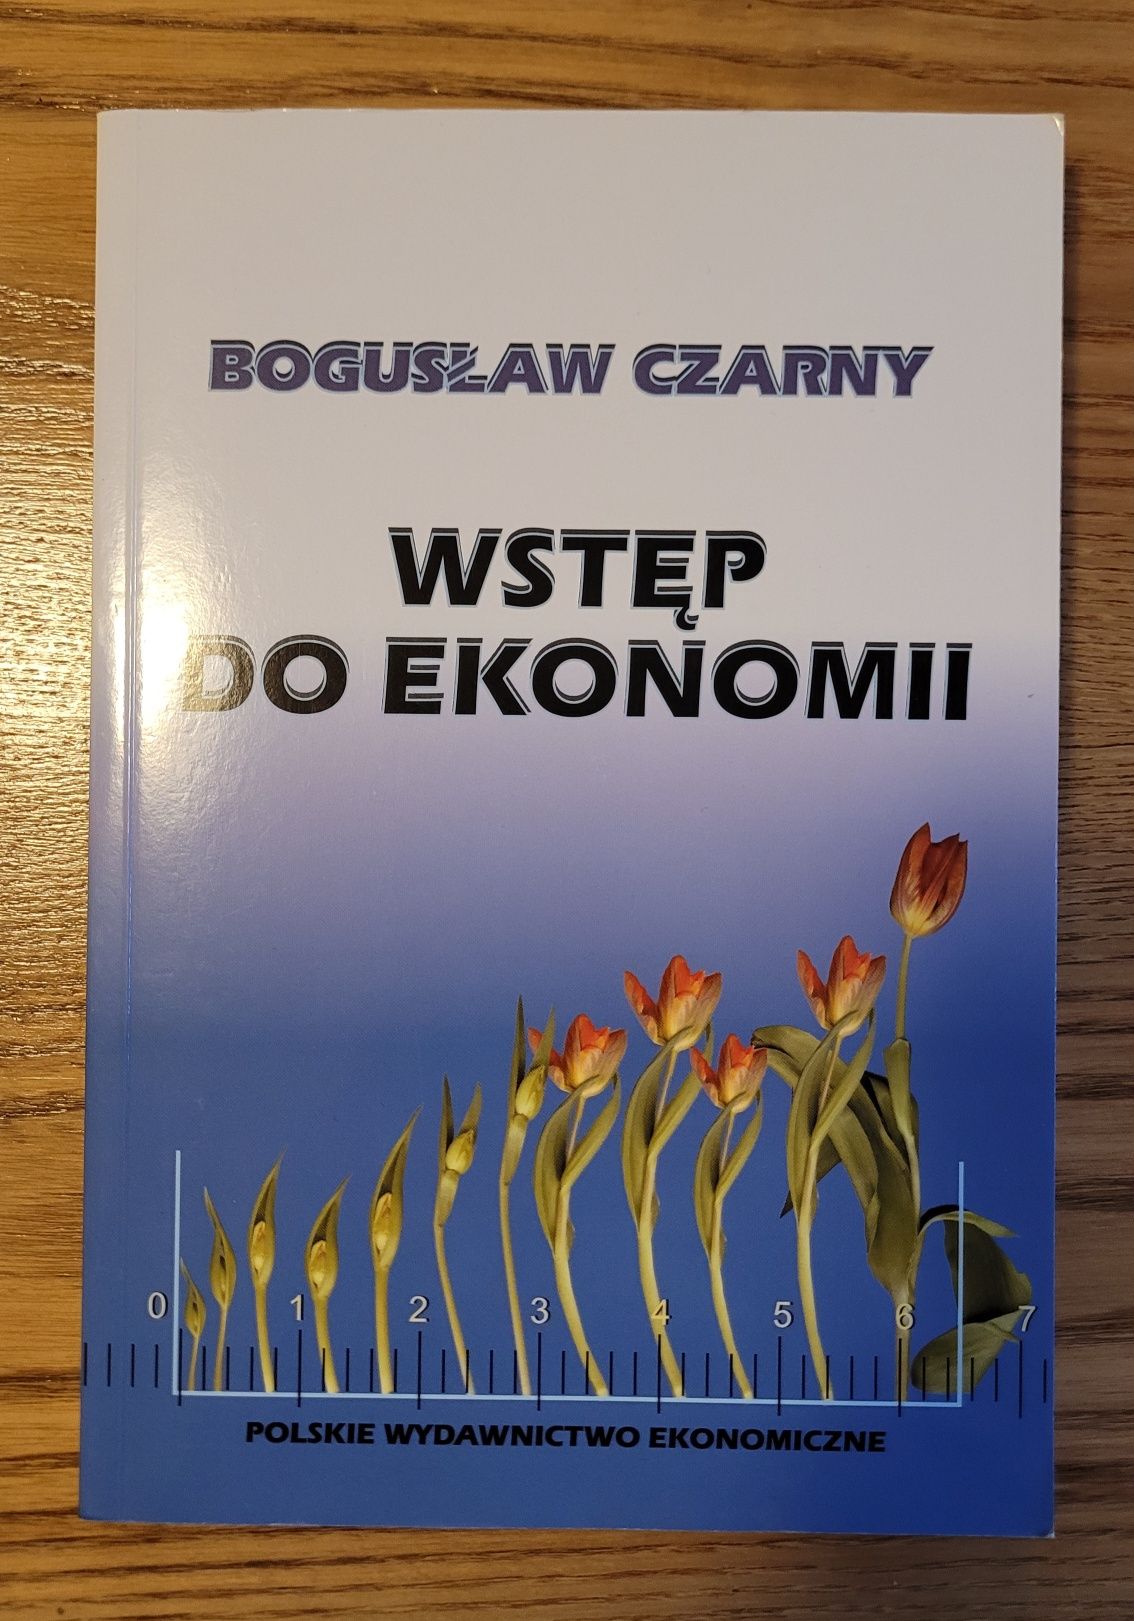 Wstęp do ekonomii - Bogusław Czarny, Polskie Wydawnictwo Ekonomiczne